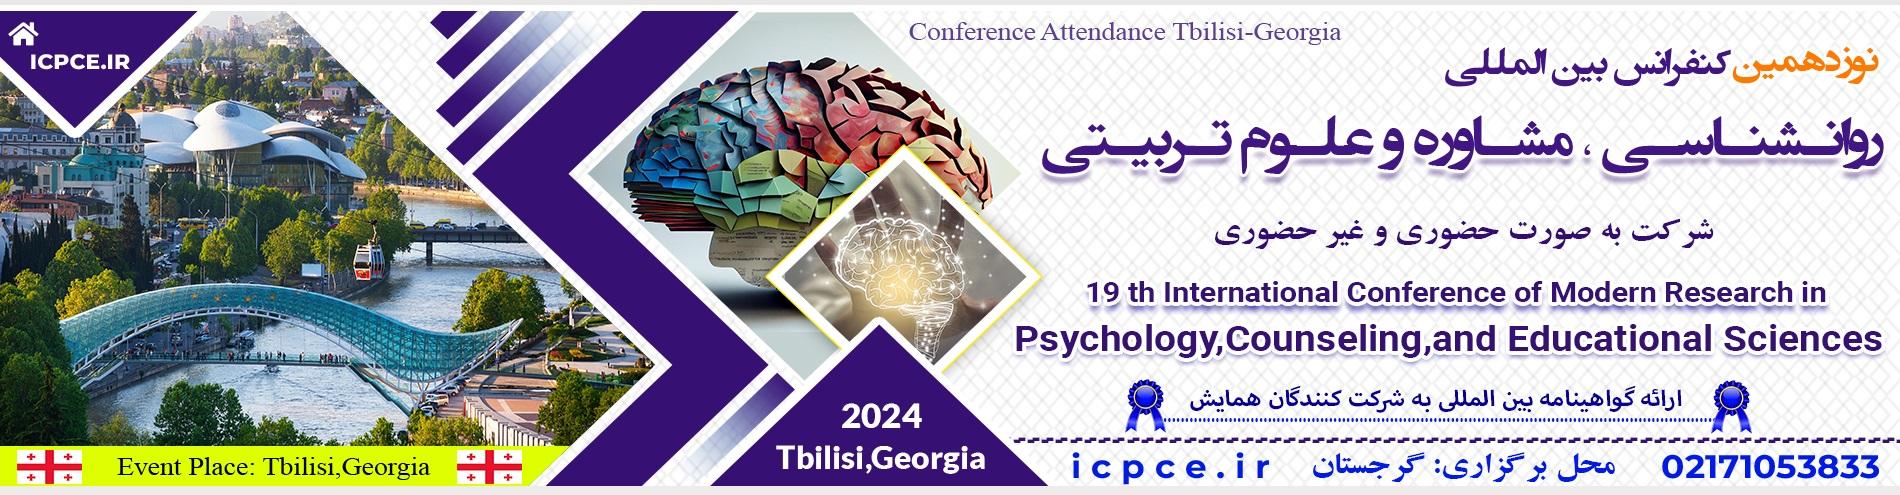 کنفرانس بین المللی روانشناسی ،مشاوره و علوم تربیتی